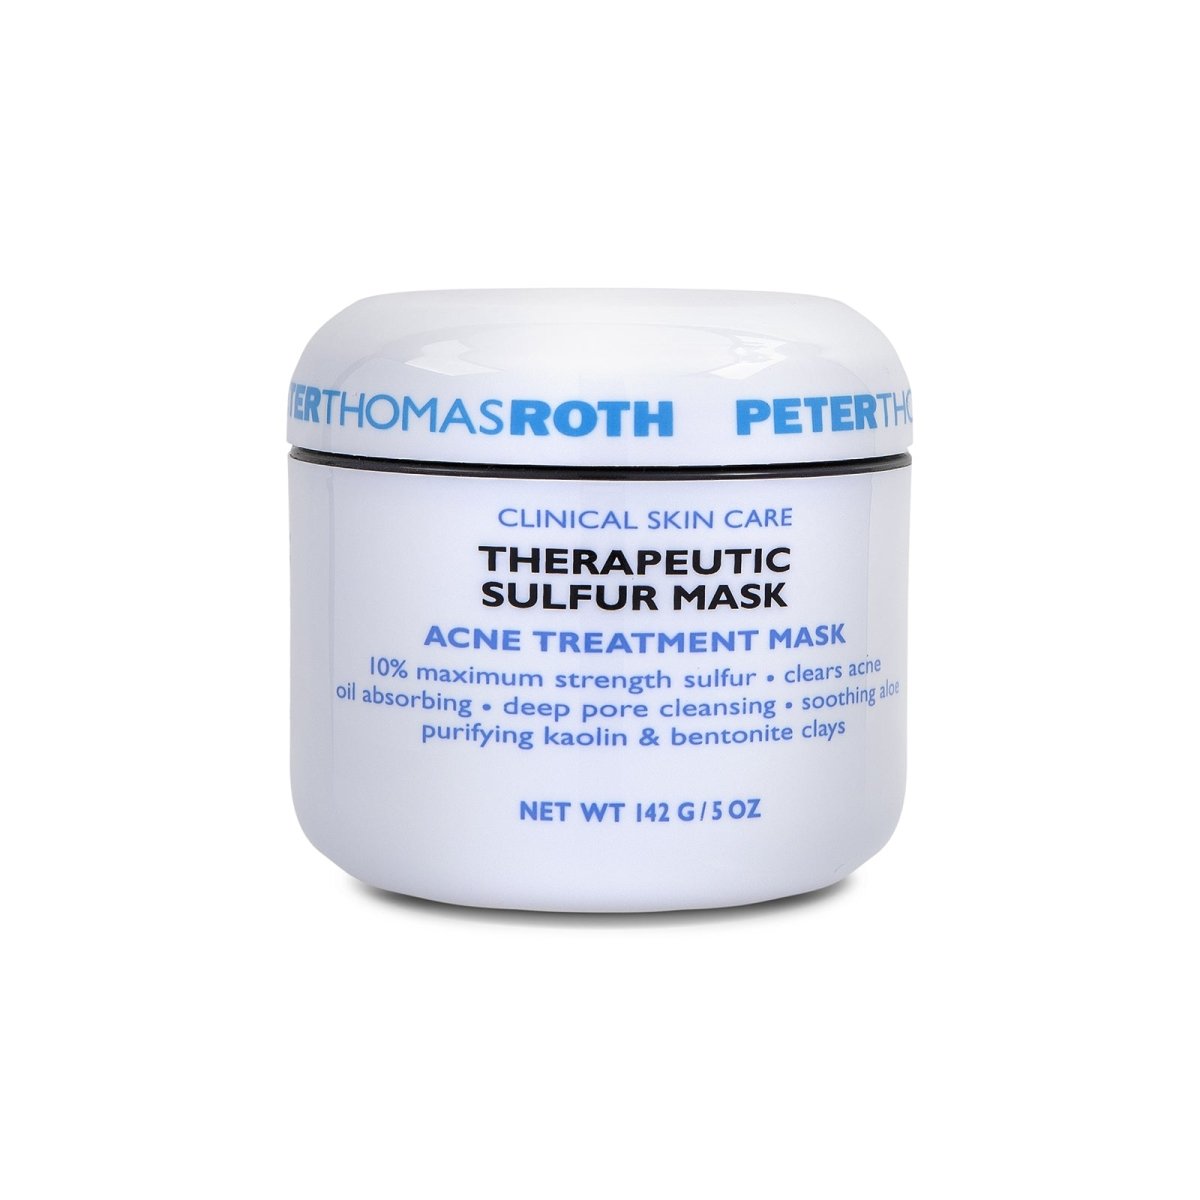 Peter Thomas Roth Therapeutic Sulfur Masque - SkincareEssentials